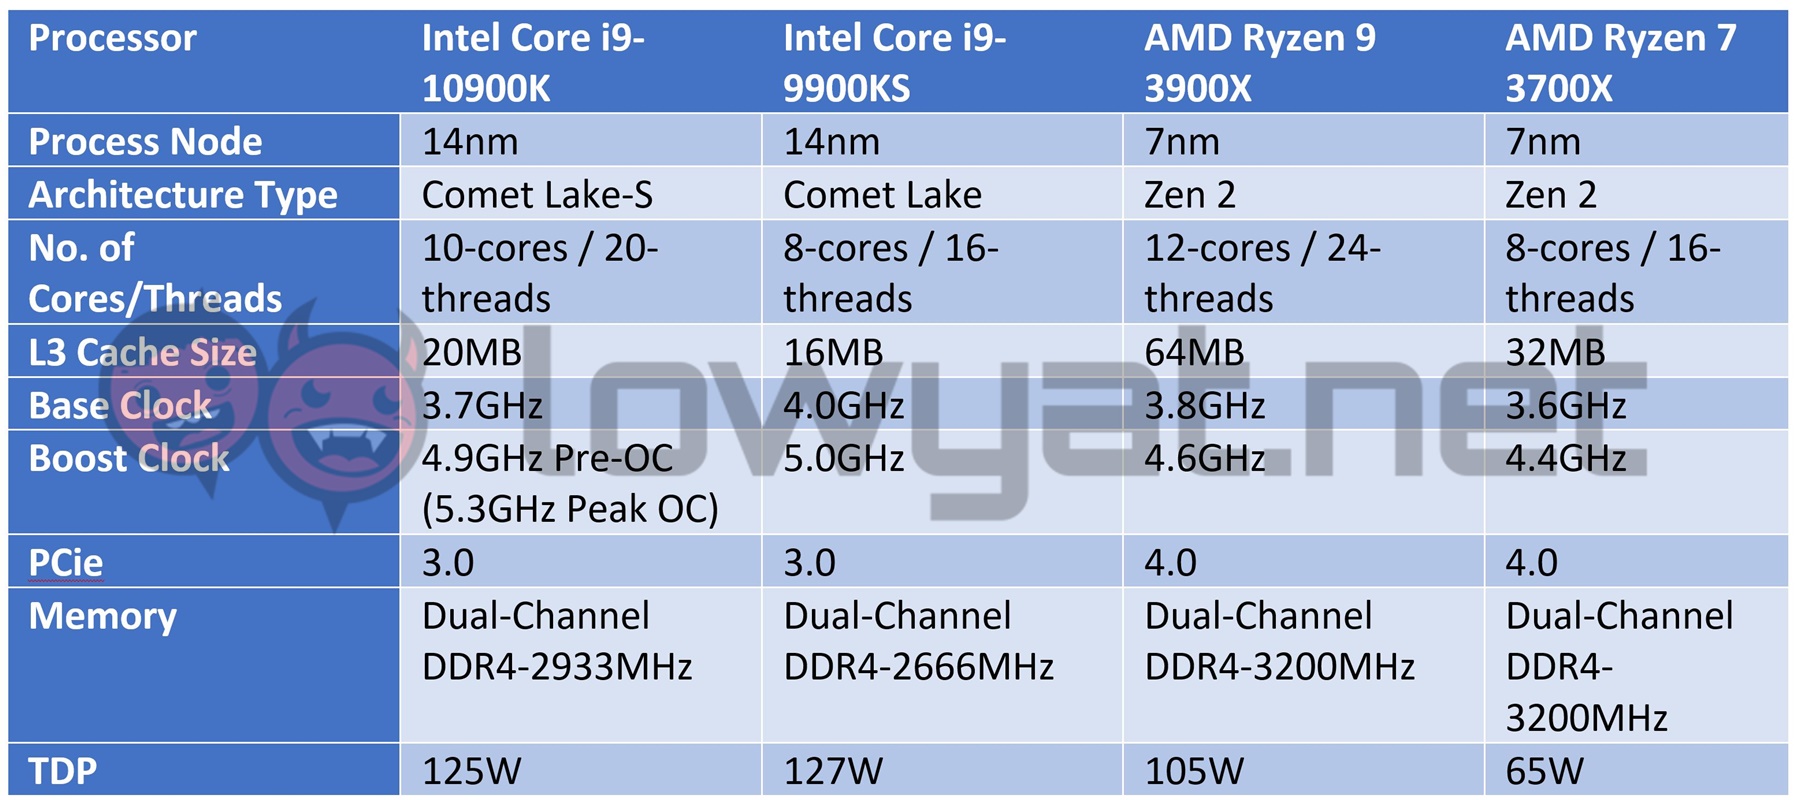 https://www.lowyat.net/wp-content/uploads/2020/06/Intel-Core-i9-10900k-specs-sheet-comparison.jpg